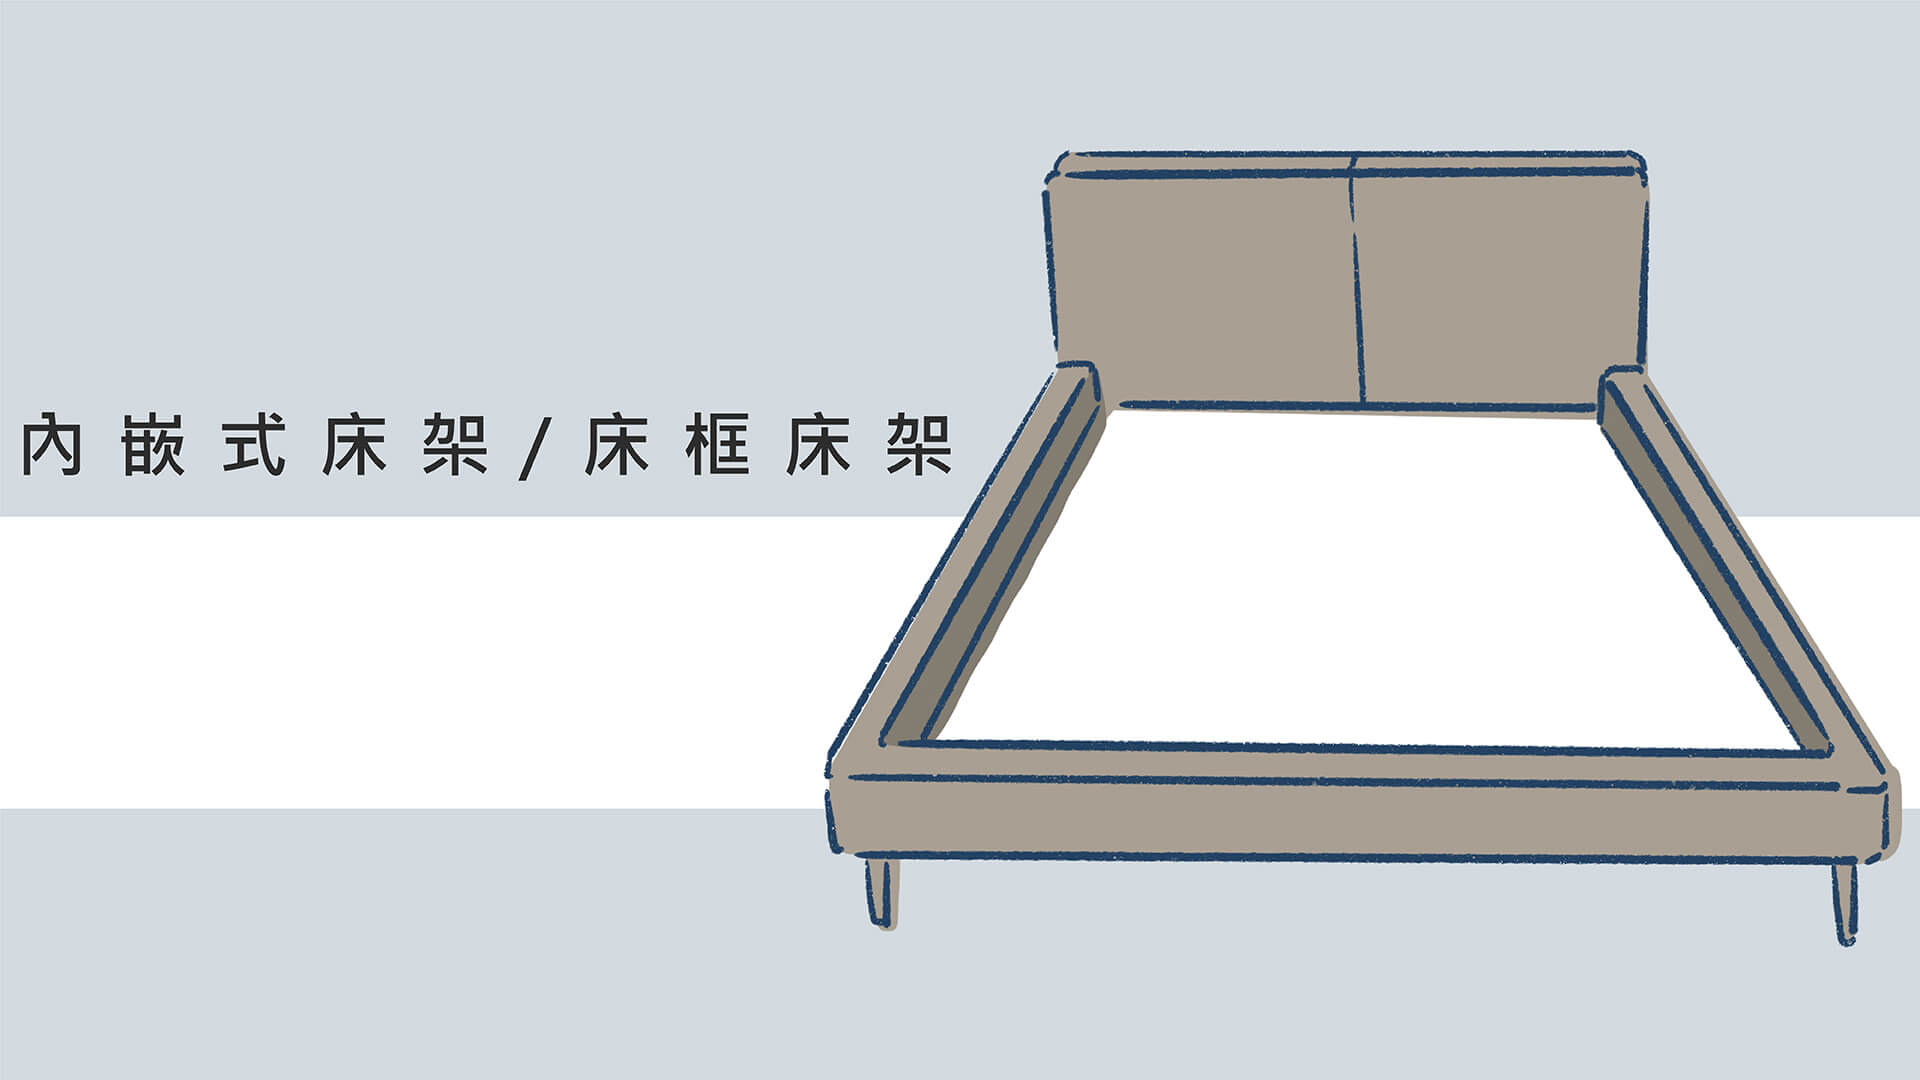 內嵌式床架又稱為床框床架，與平面式床架的差異為四周多了明顯的邊框設計